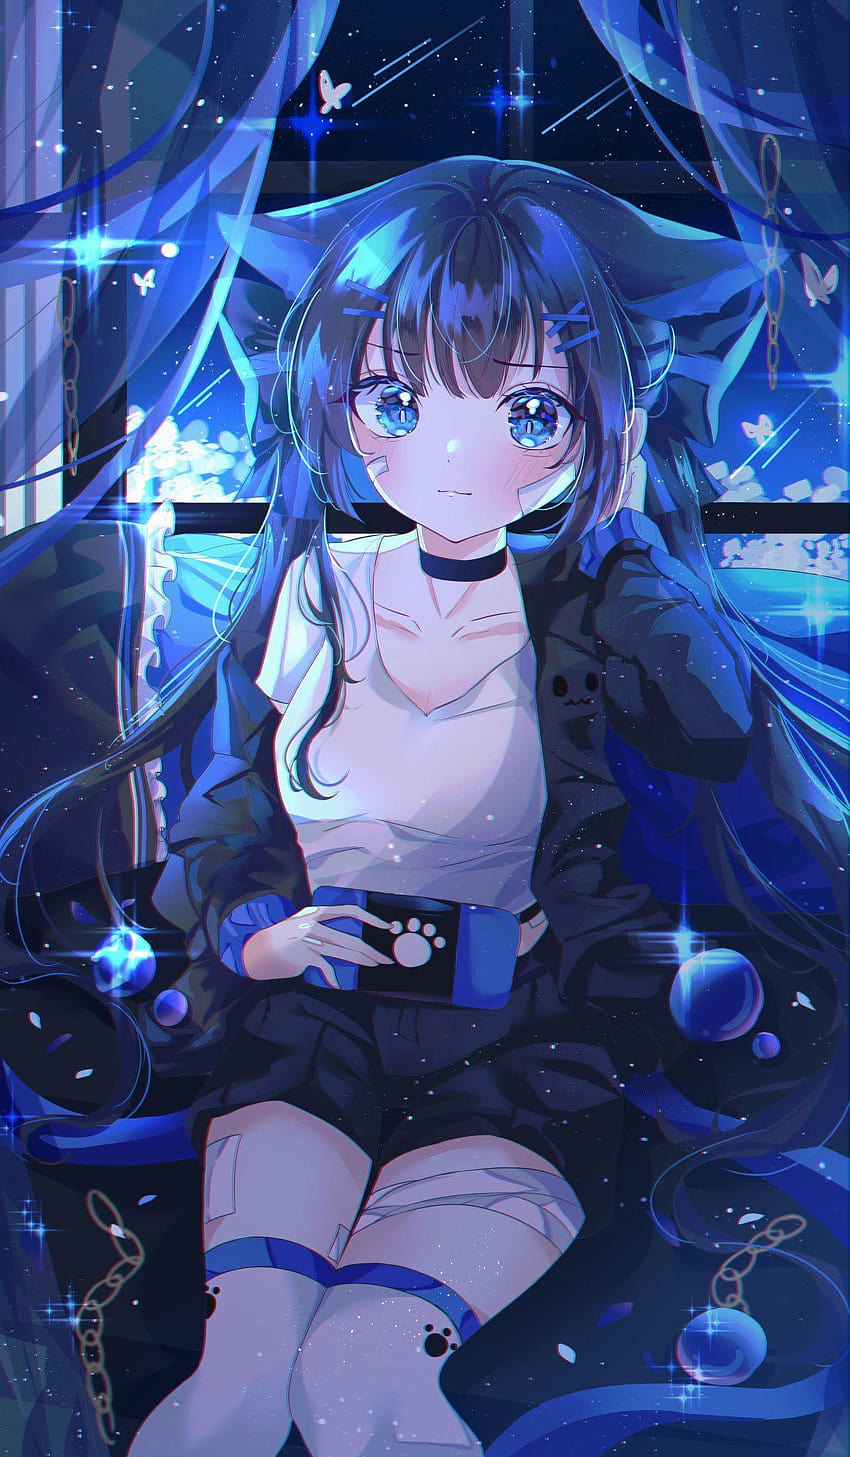 Anime gamer girl, gaming anime girl aesthetic HD phone wallpaper ...